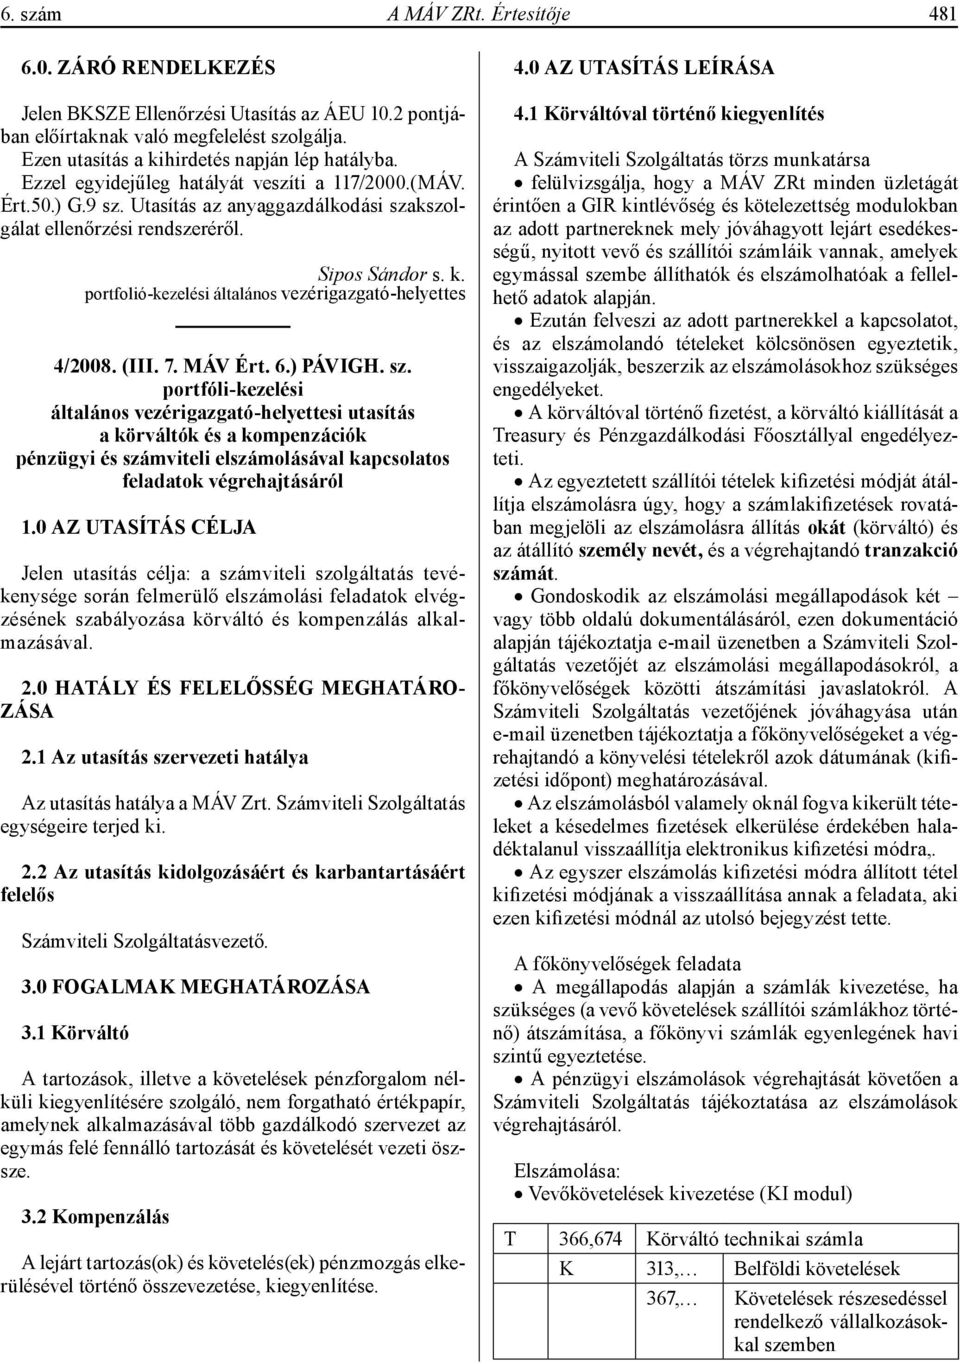 portfolió-kezelési általános vezérigazgató-helyettes 4/2008. (III. 7. MÁV Ért. 6.) PÁVIGH. sz.